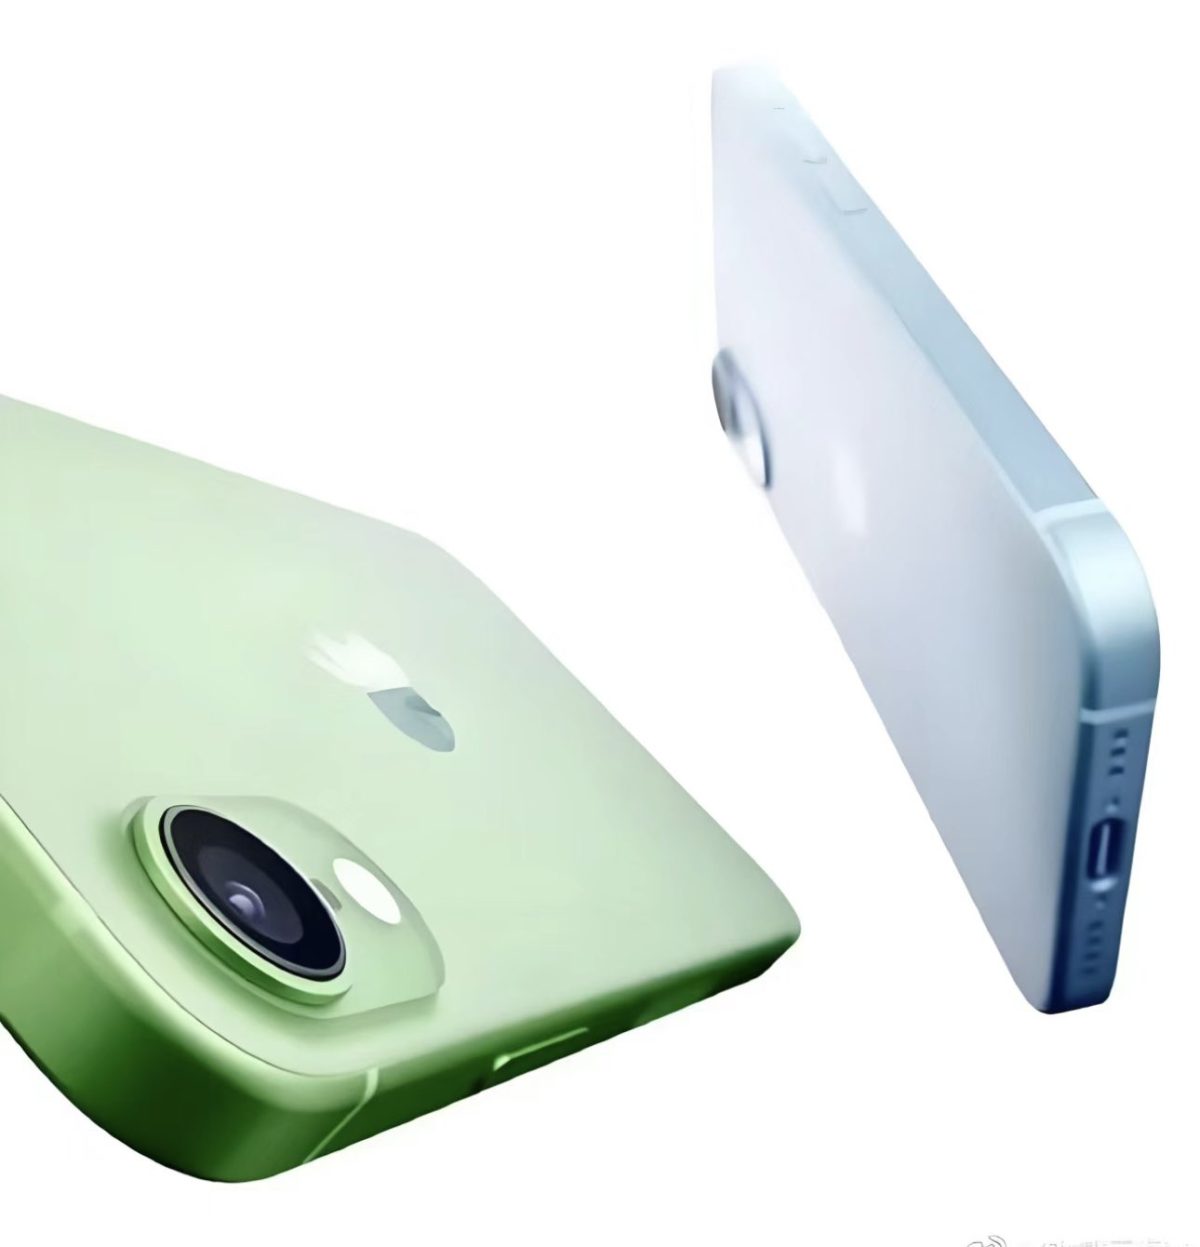 iPhone SE 4向けOLED供給と噂のBOEが、次世代OLED製造ライン準備